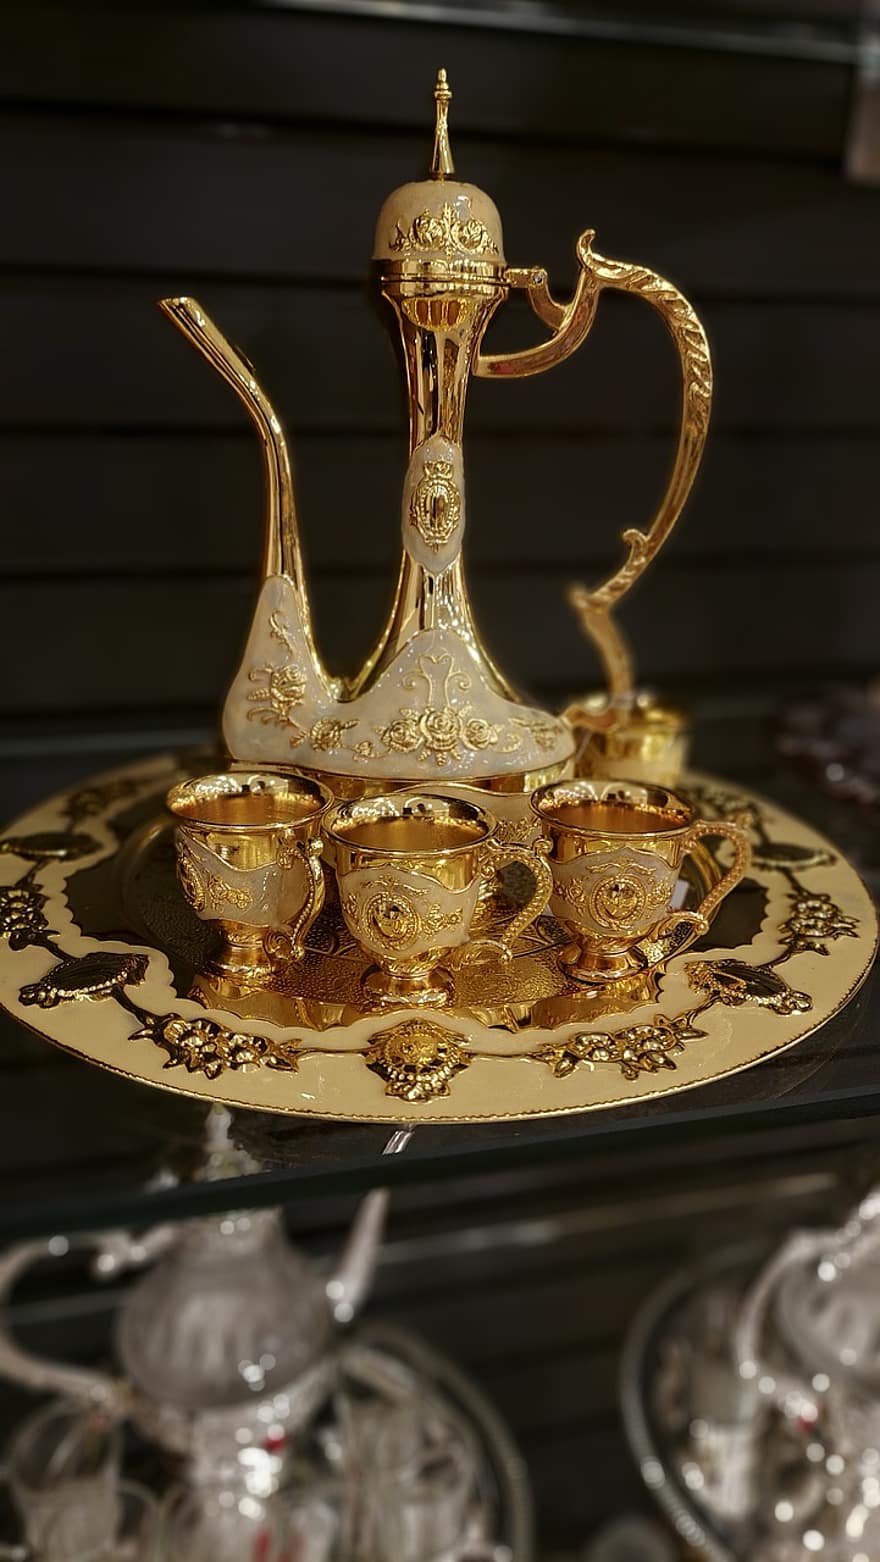 Zlatá konvice, čajový set, Ozdobný čajový set, kultur, dekorace, zlato, antický, detail, lesklý, kov, suvenýr